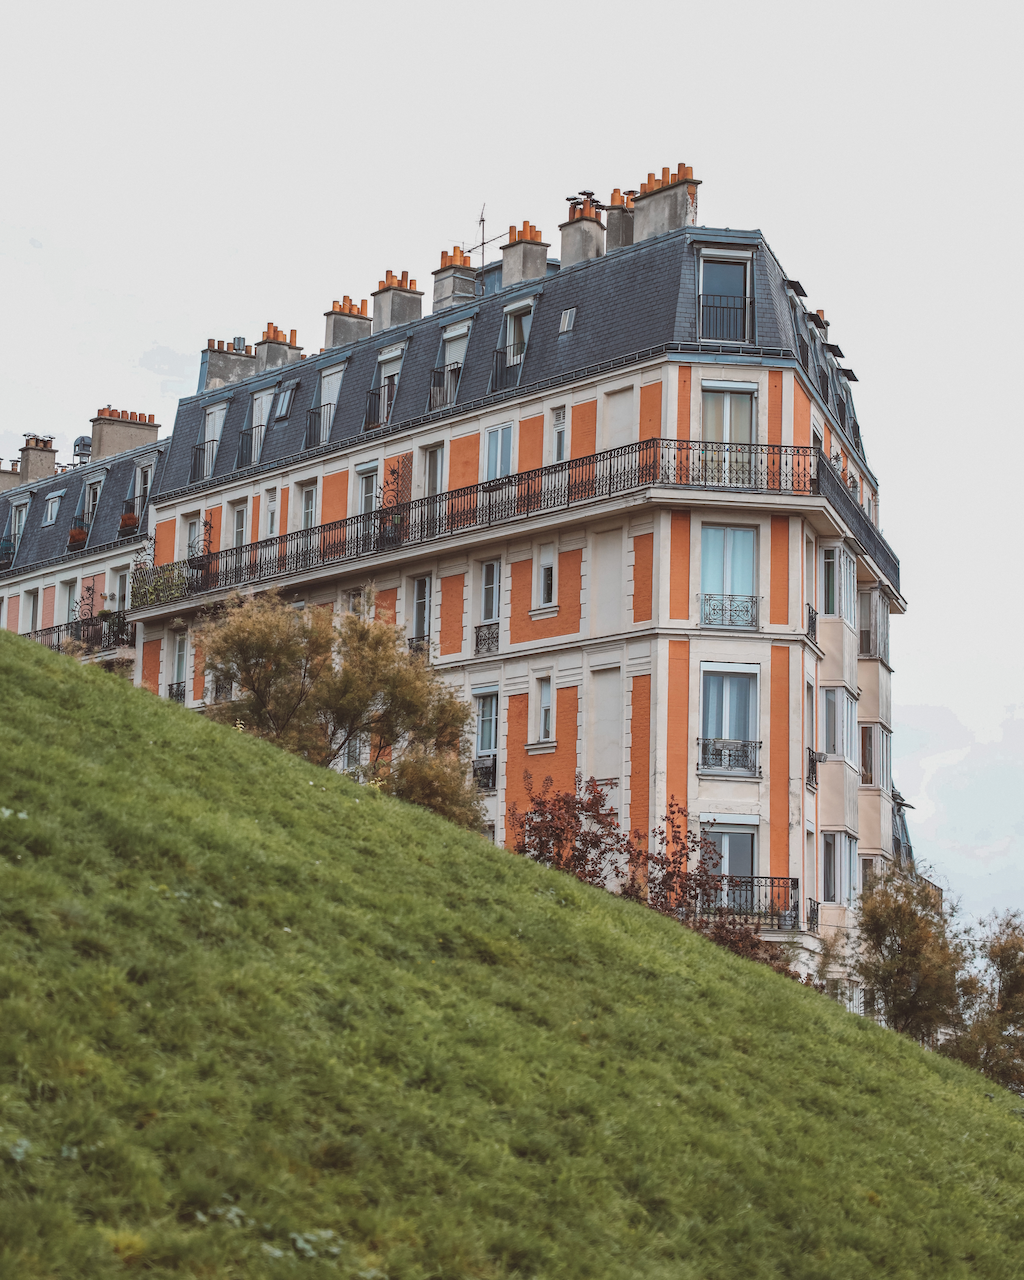 Famous Montmartre building beneath the hill - Paris - France